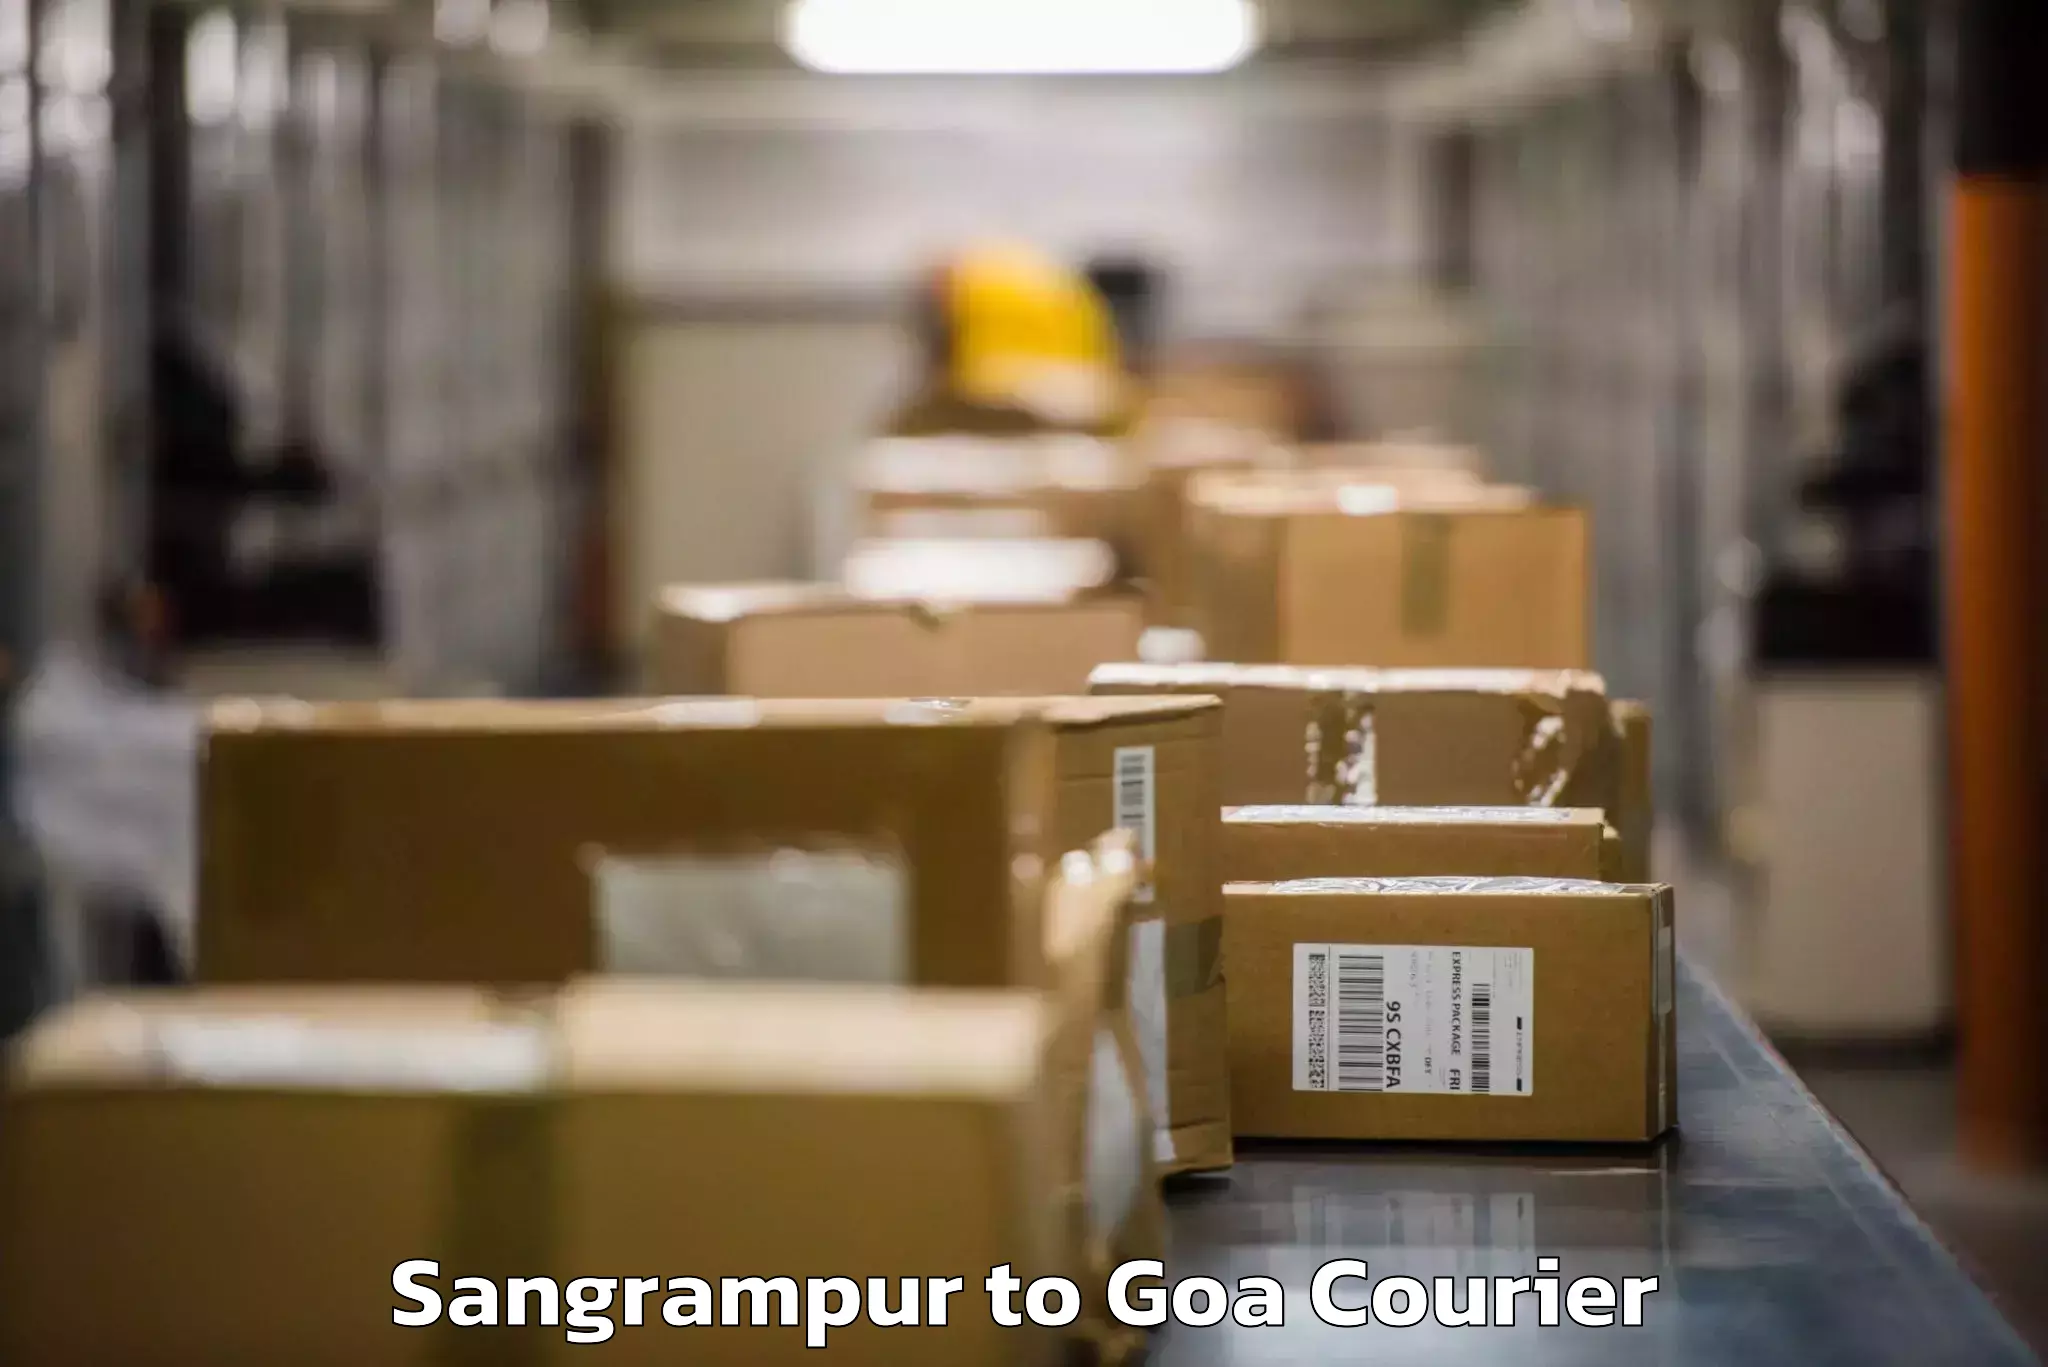 Baggage transport technology Sangrampur to Goa